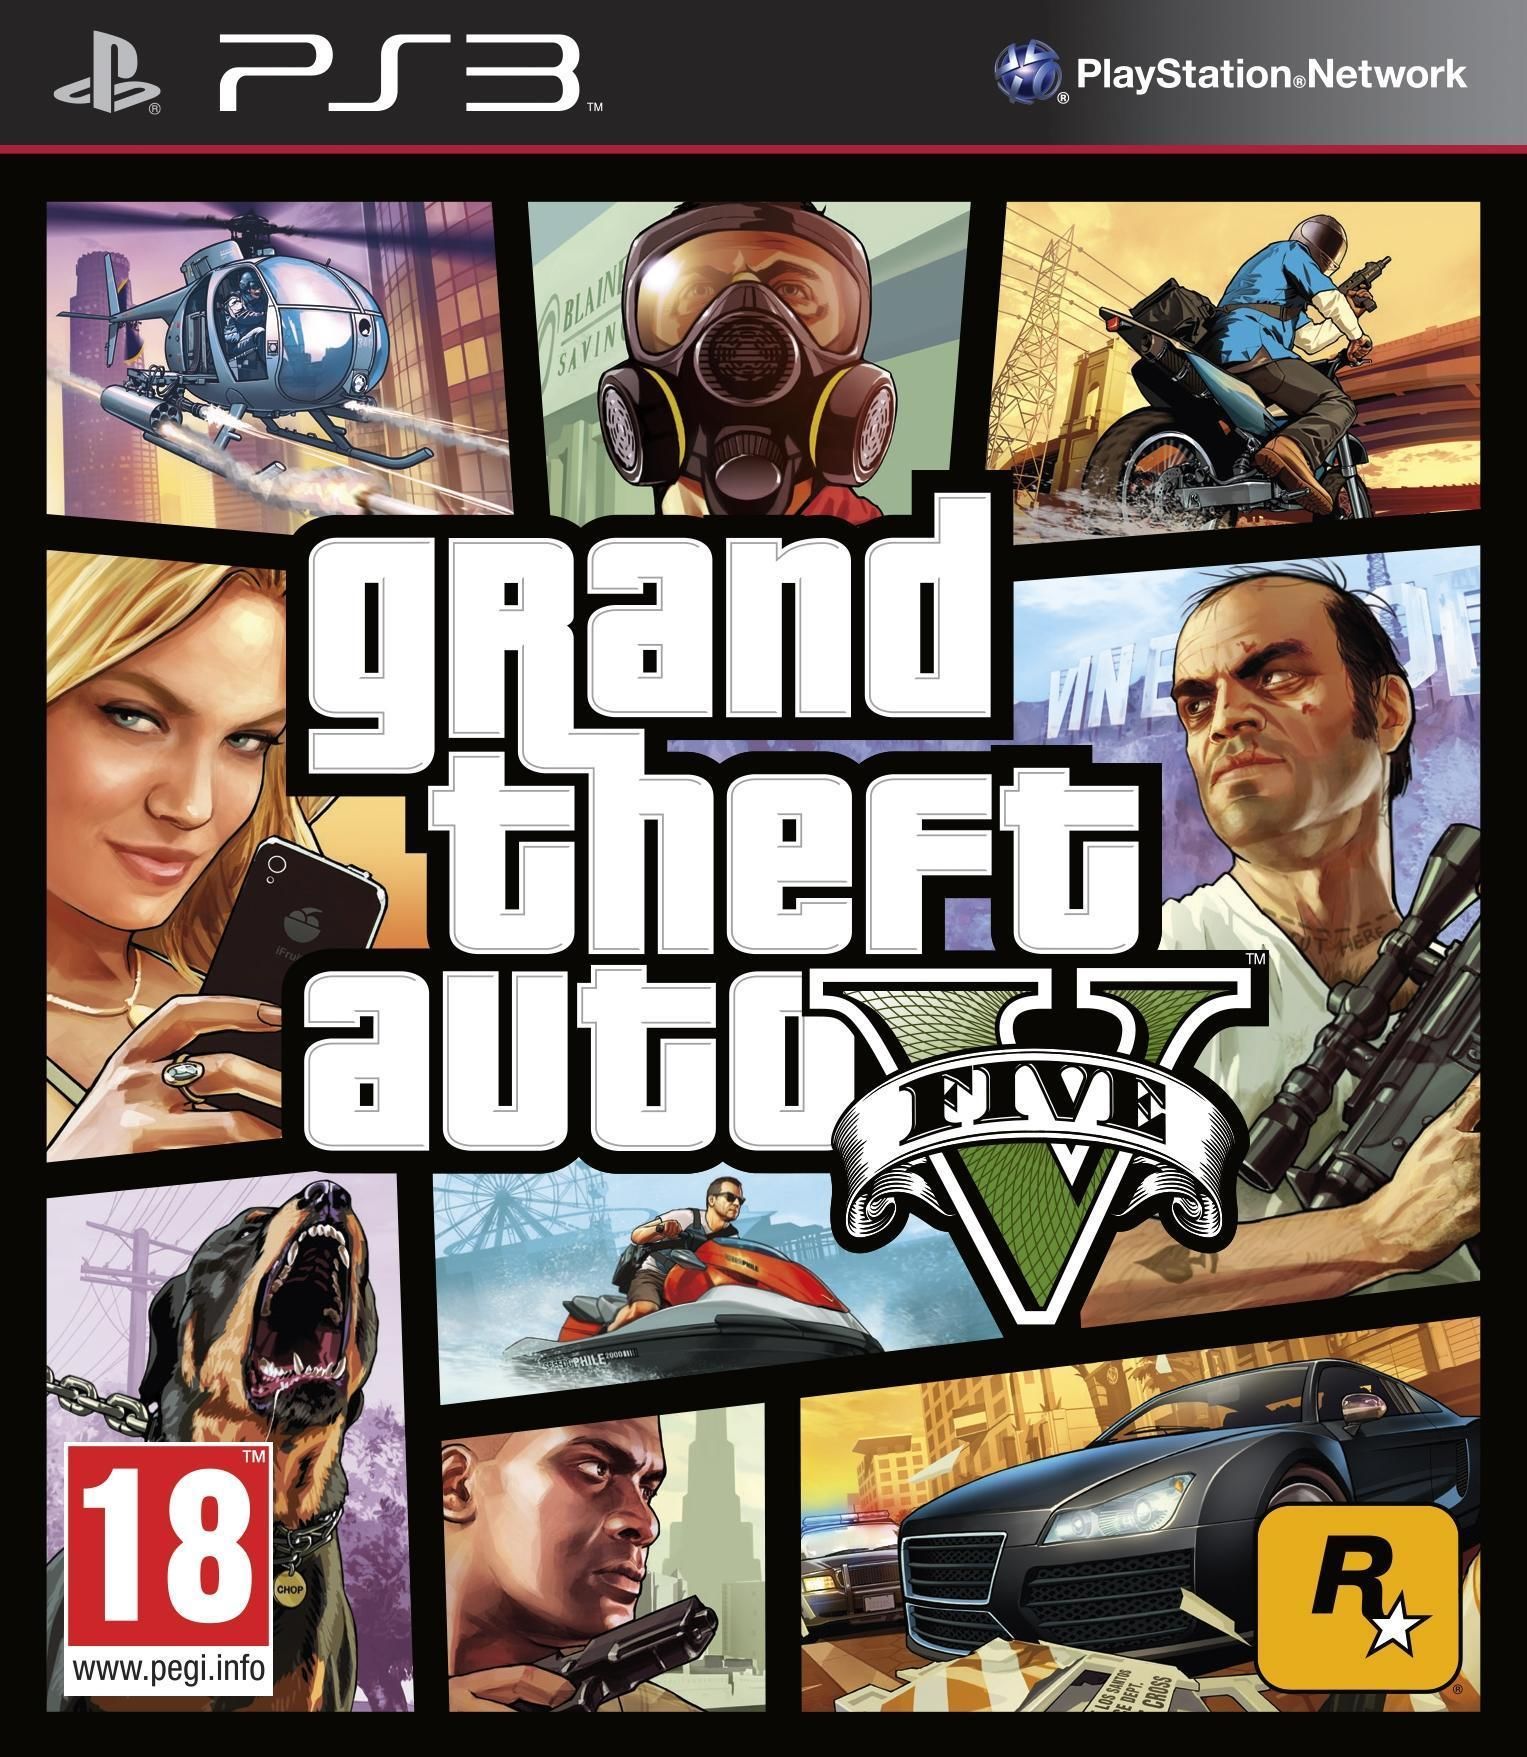 GTA 5 (Grand Theft Auto V) (NL/FR)